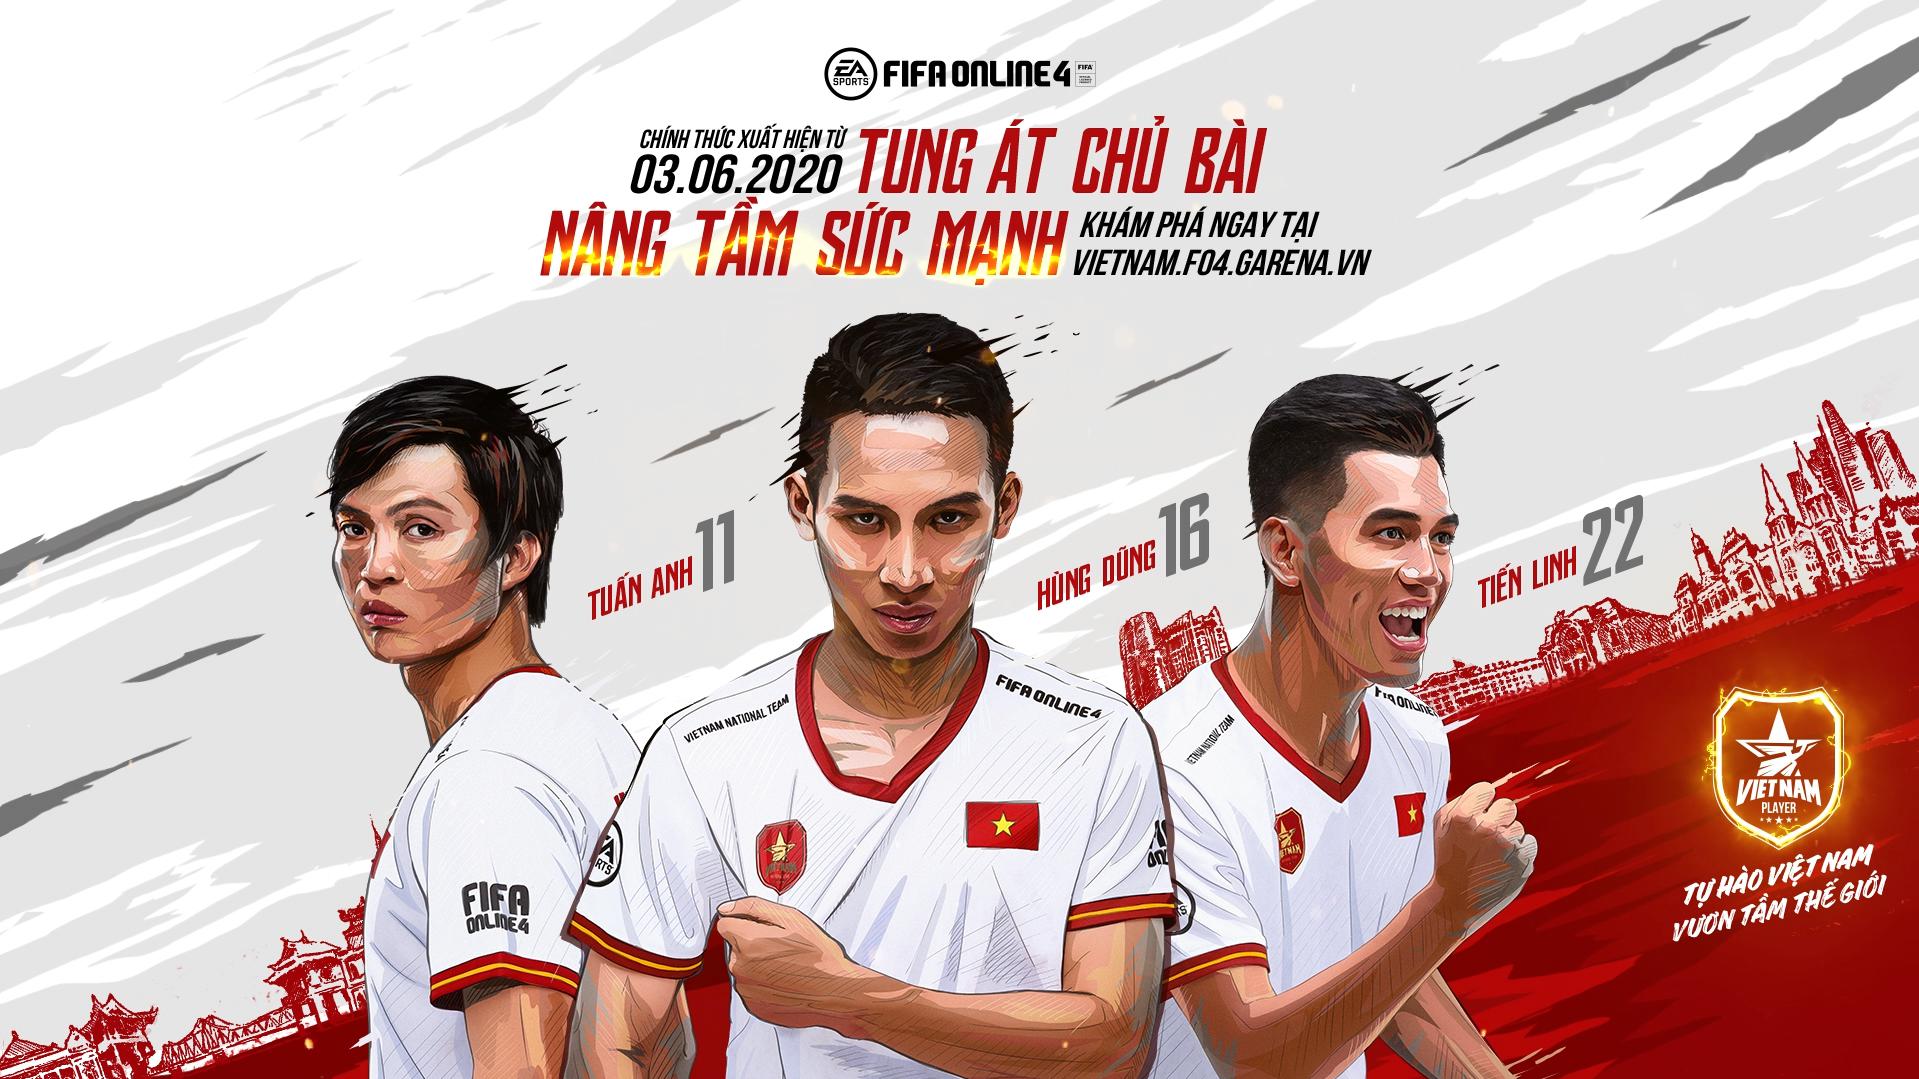 Hùng Dũng, Tuấn Anh, Tiến Linh chính thức góp mặt trong FIFA Online 4, chỉ số cực khủng!